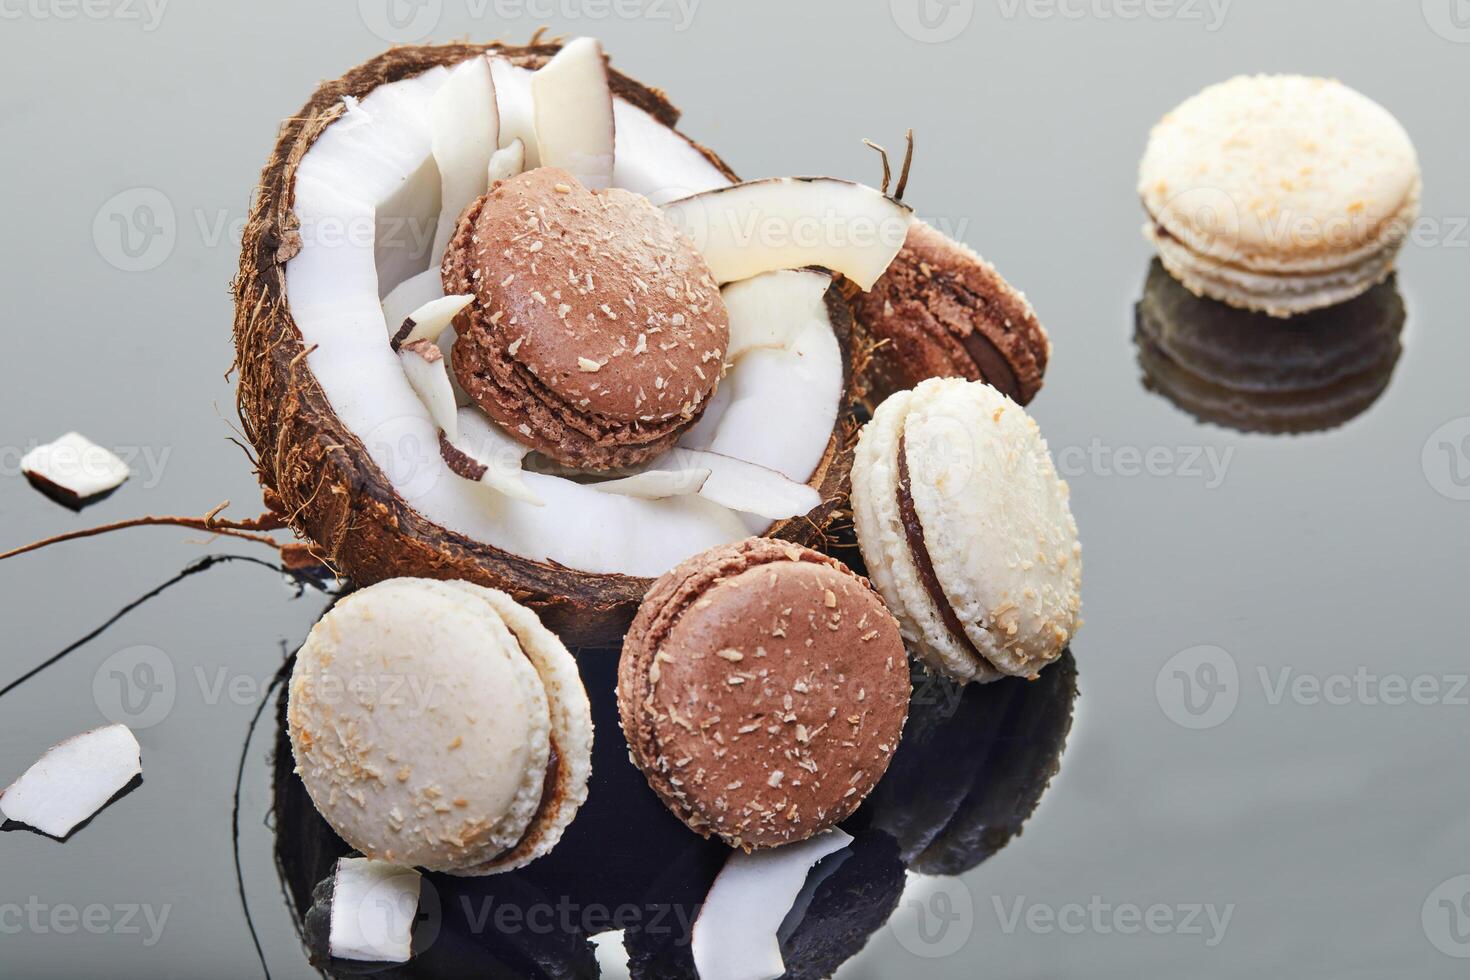 Kokosnuss Macarons mit geschreddert Kokosnuss auf grau Hintergrund, Essen Blog Konzept foto